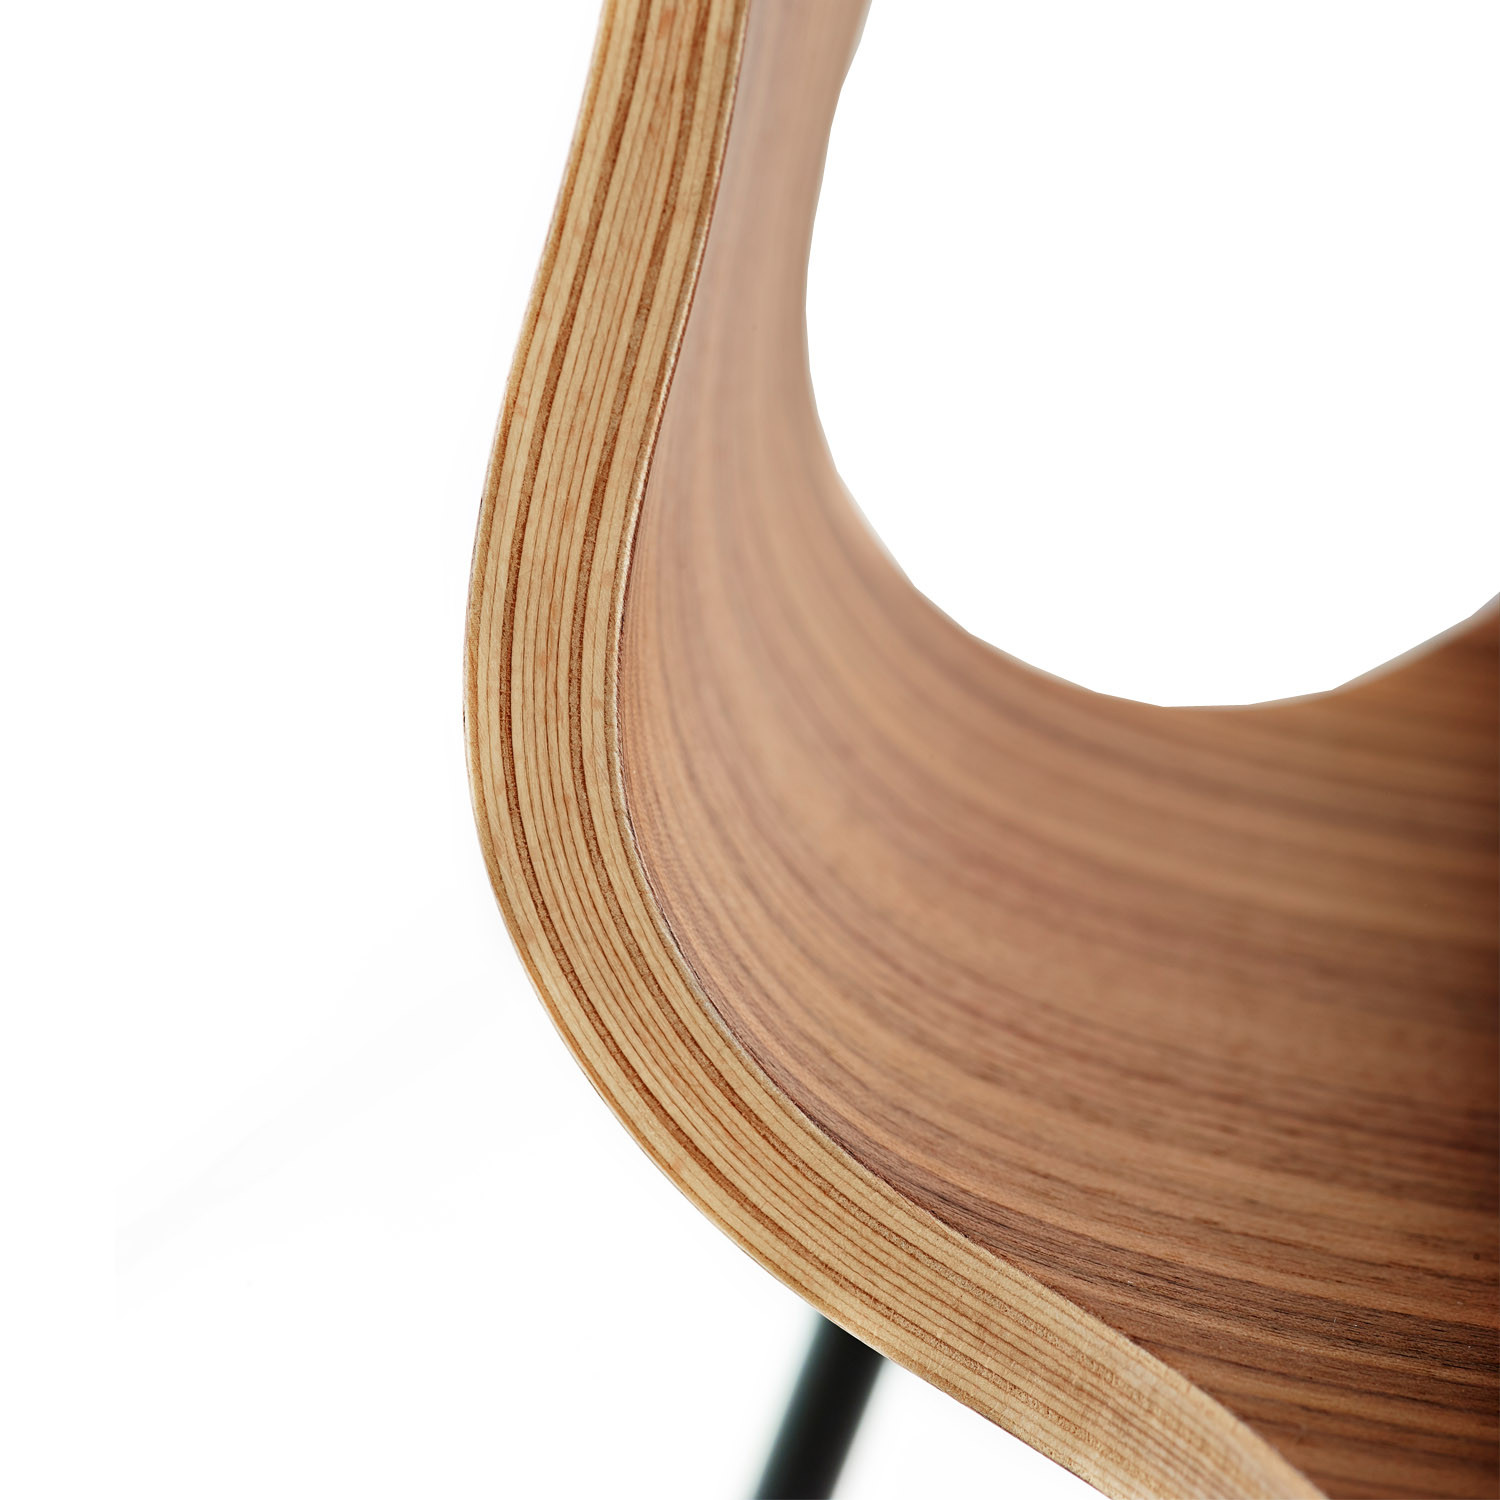 Munkegaard Chair with Wood Veneer